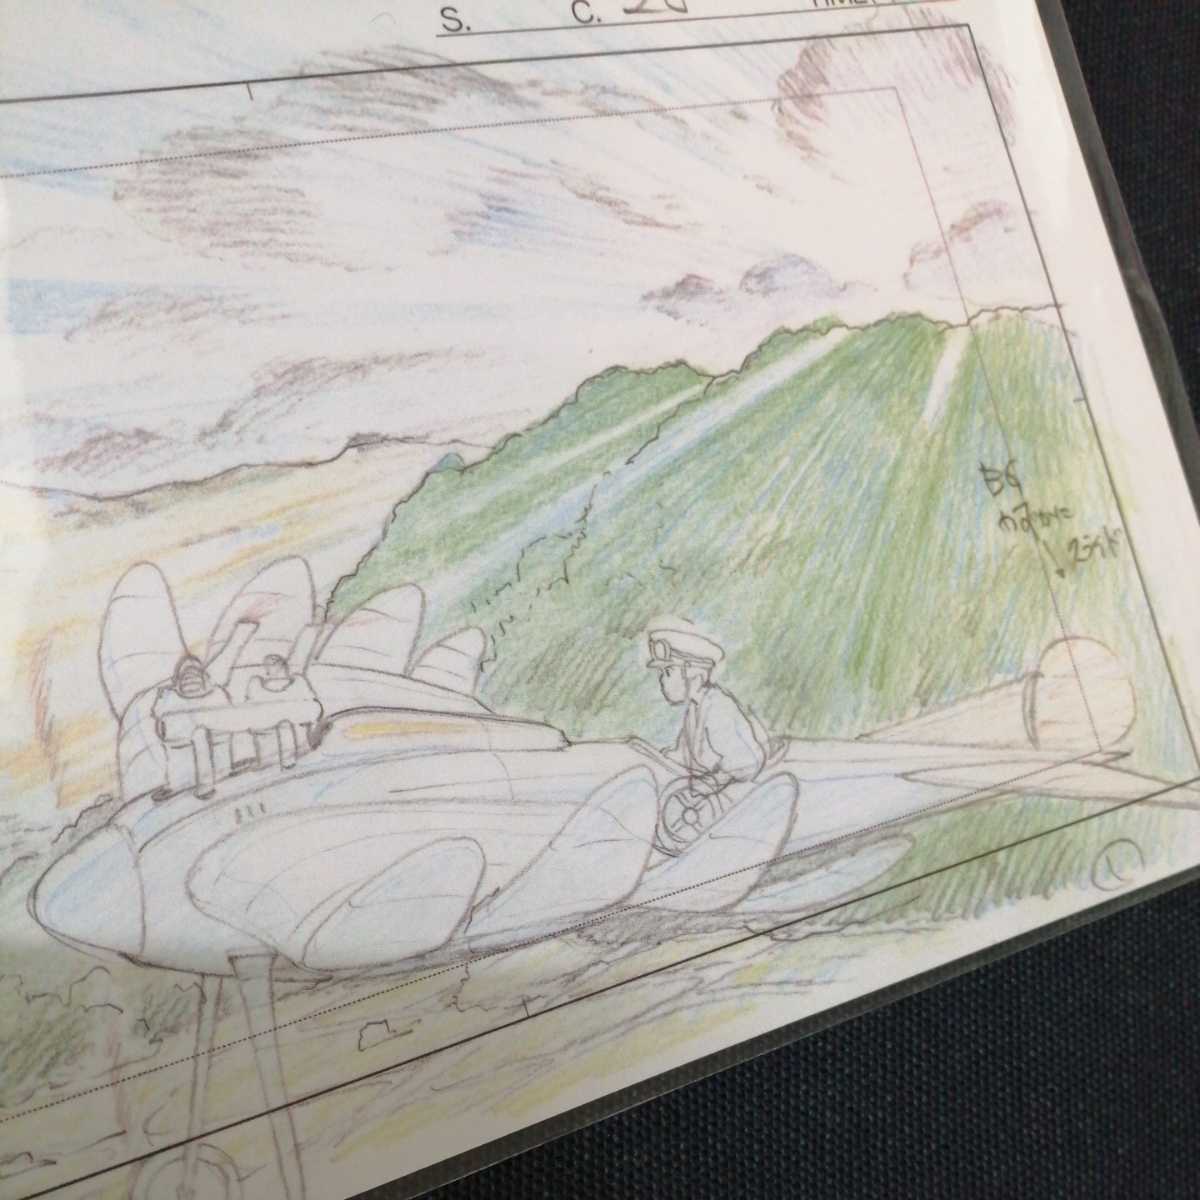  Studio Ghibli способ ... расположение порез . осмотр ) Ghibli открытка постер исходная картина цифровая картинка расположение выставка Miyazaki . высота поле .n